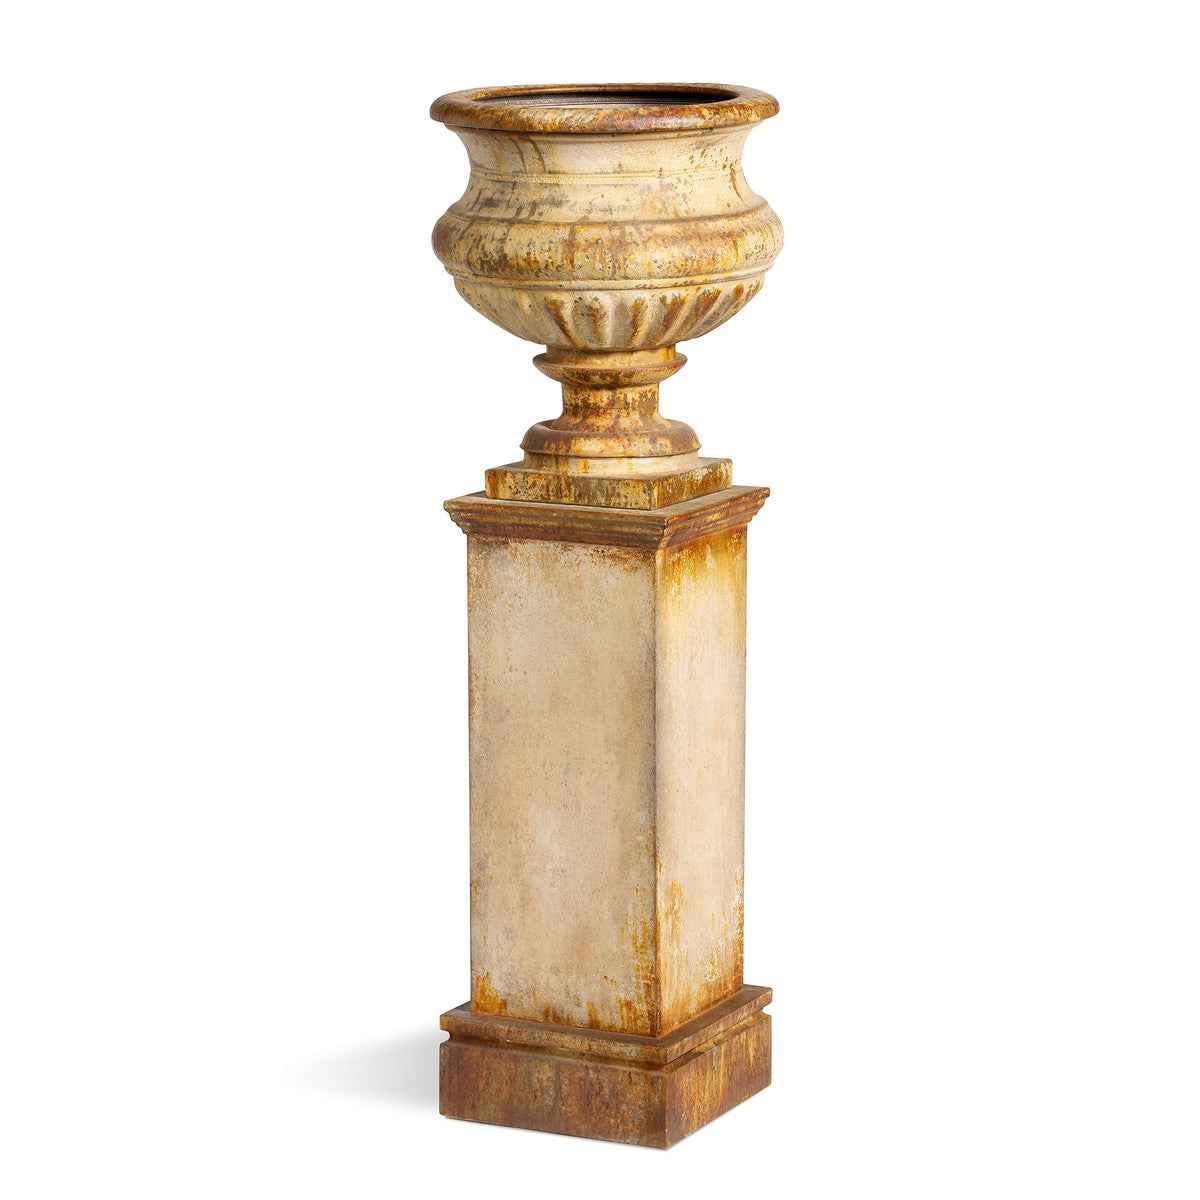 Grecian Urn With Pedestal, Restoration Hardware Garden Urns